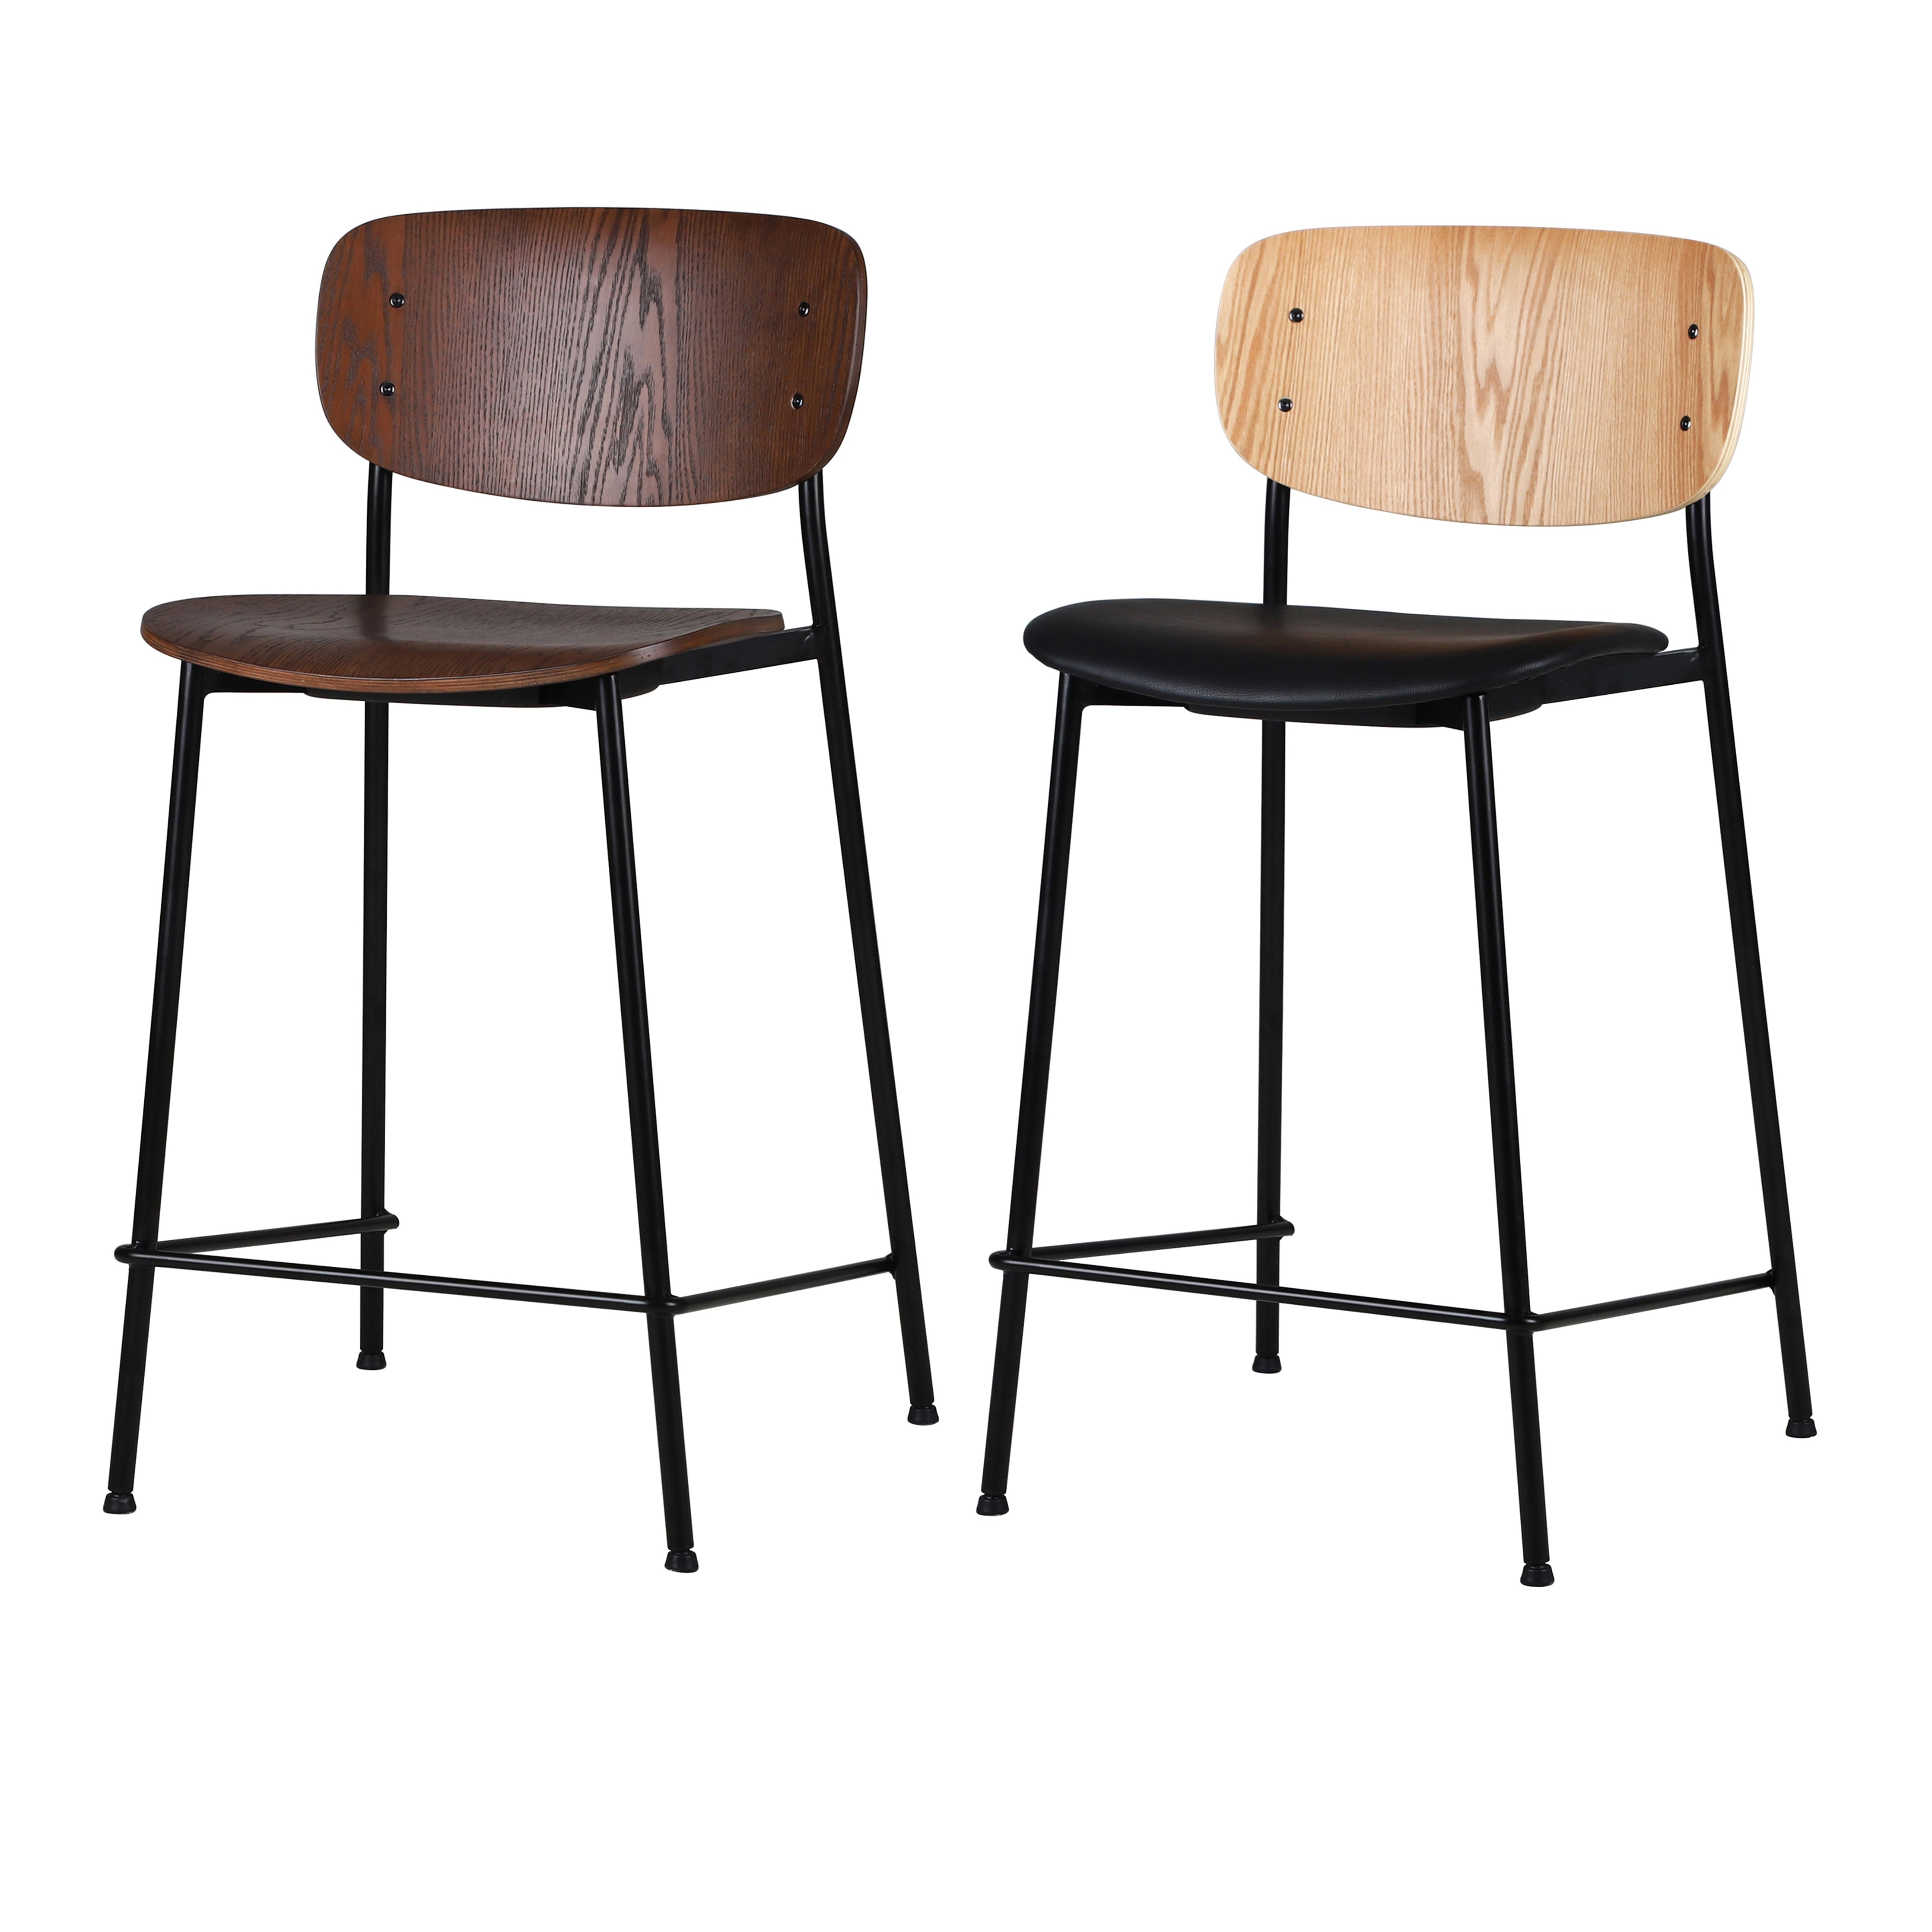 WM - Bar Chair (Wooden)